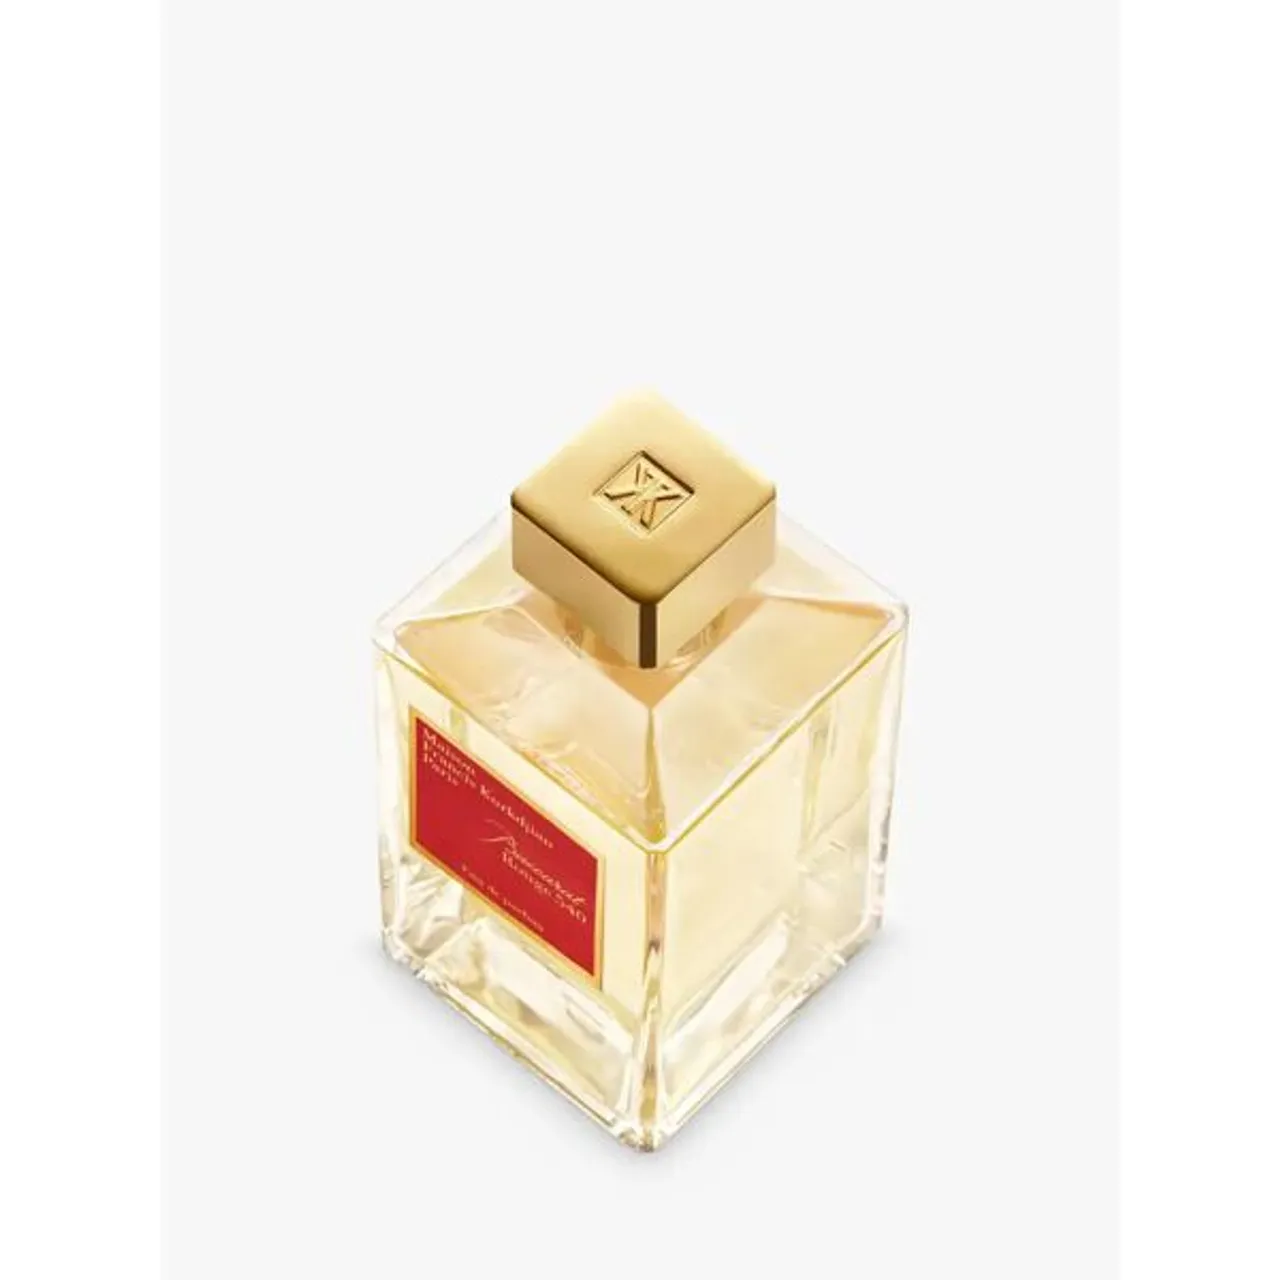 Maison Francis Kurkdjian Baccarat Rouge 540 Eau de Parfum - Unisex - Size: 200ml